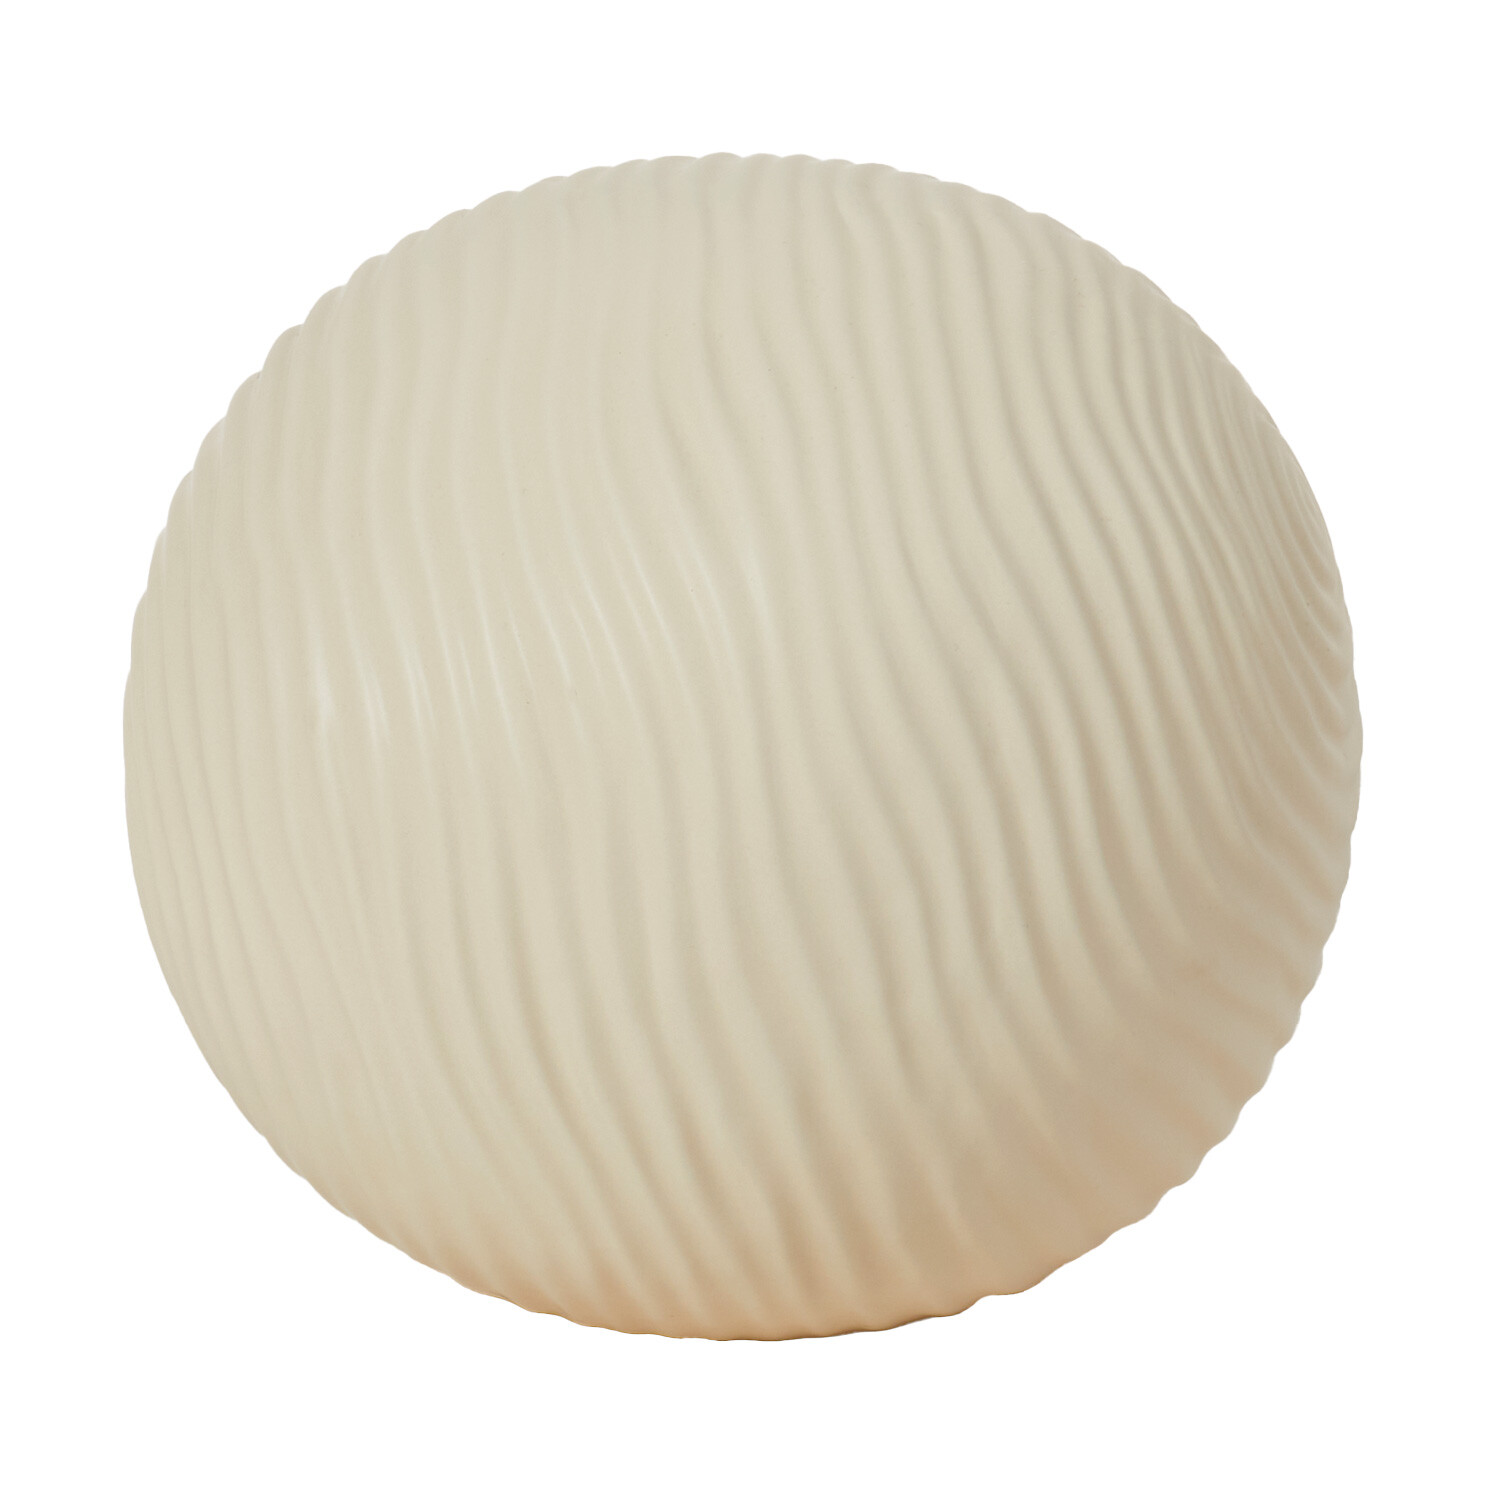 Cream Ceramic Ball - Cream / Small Image 1